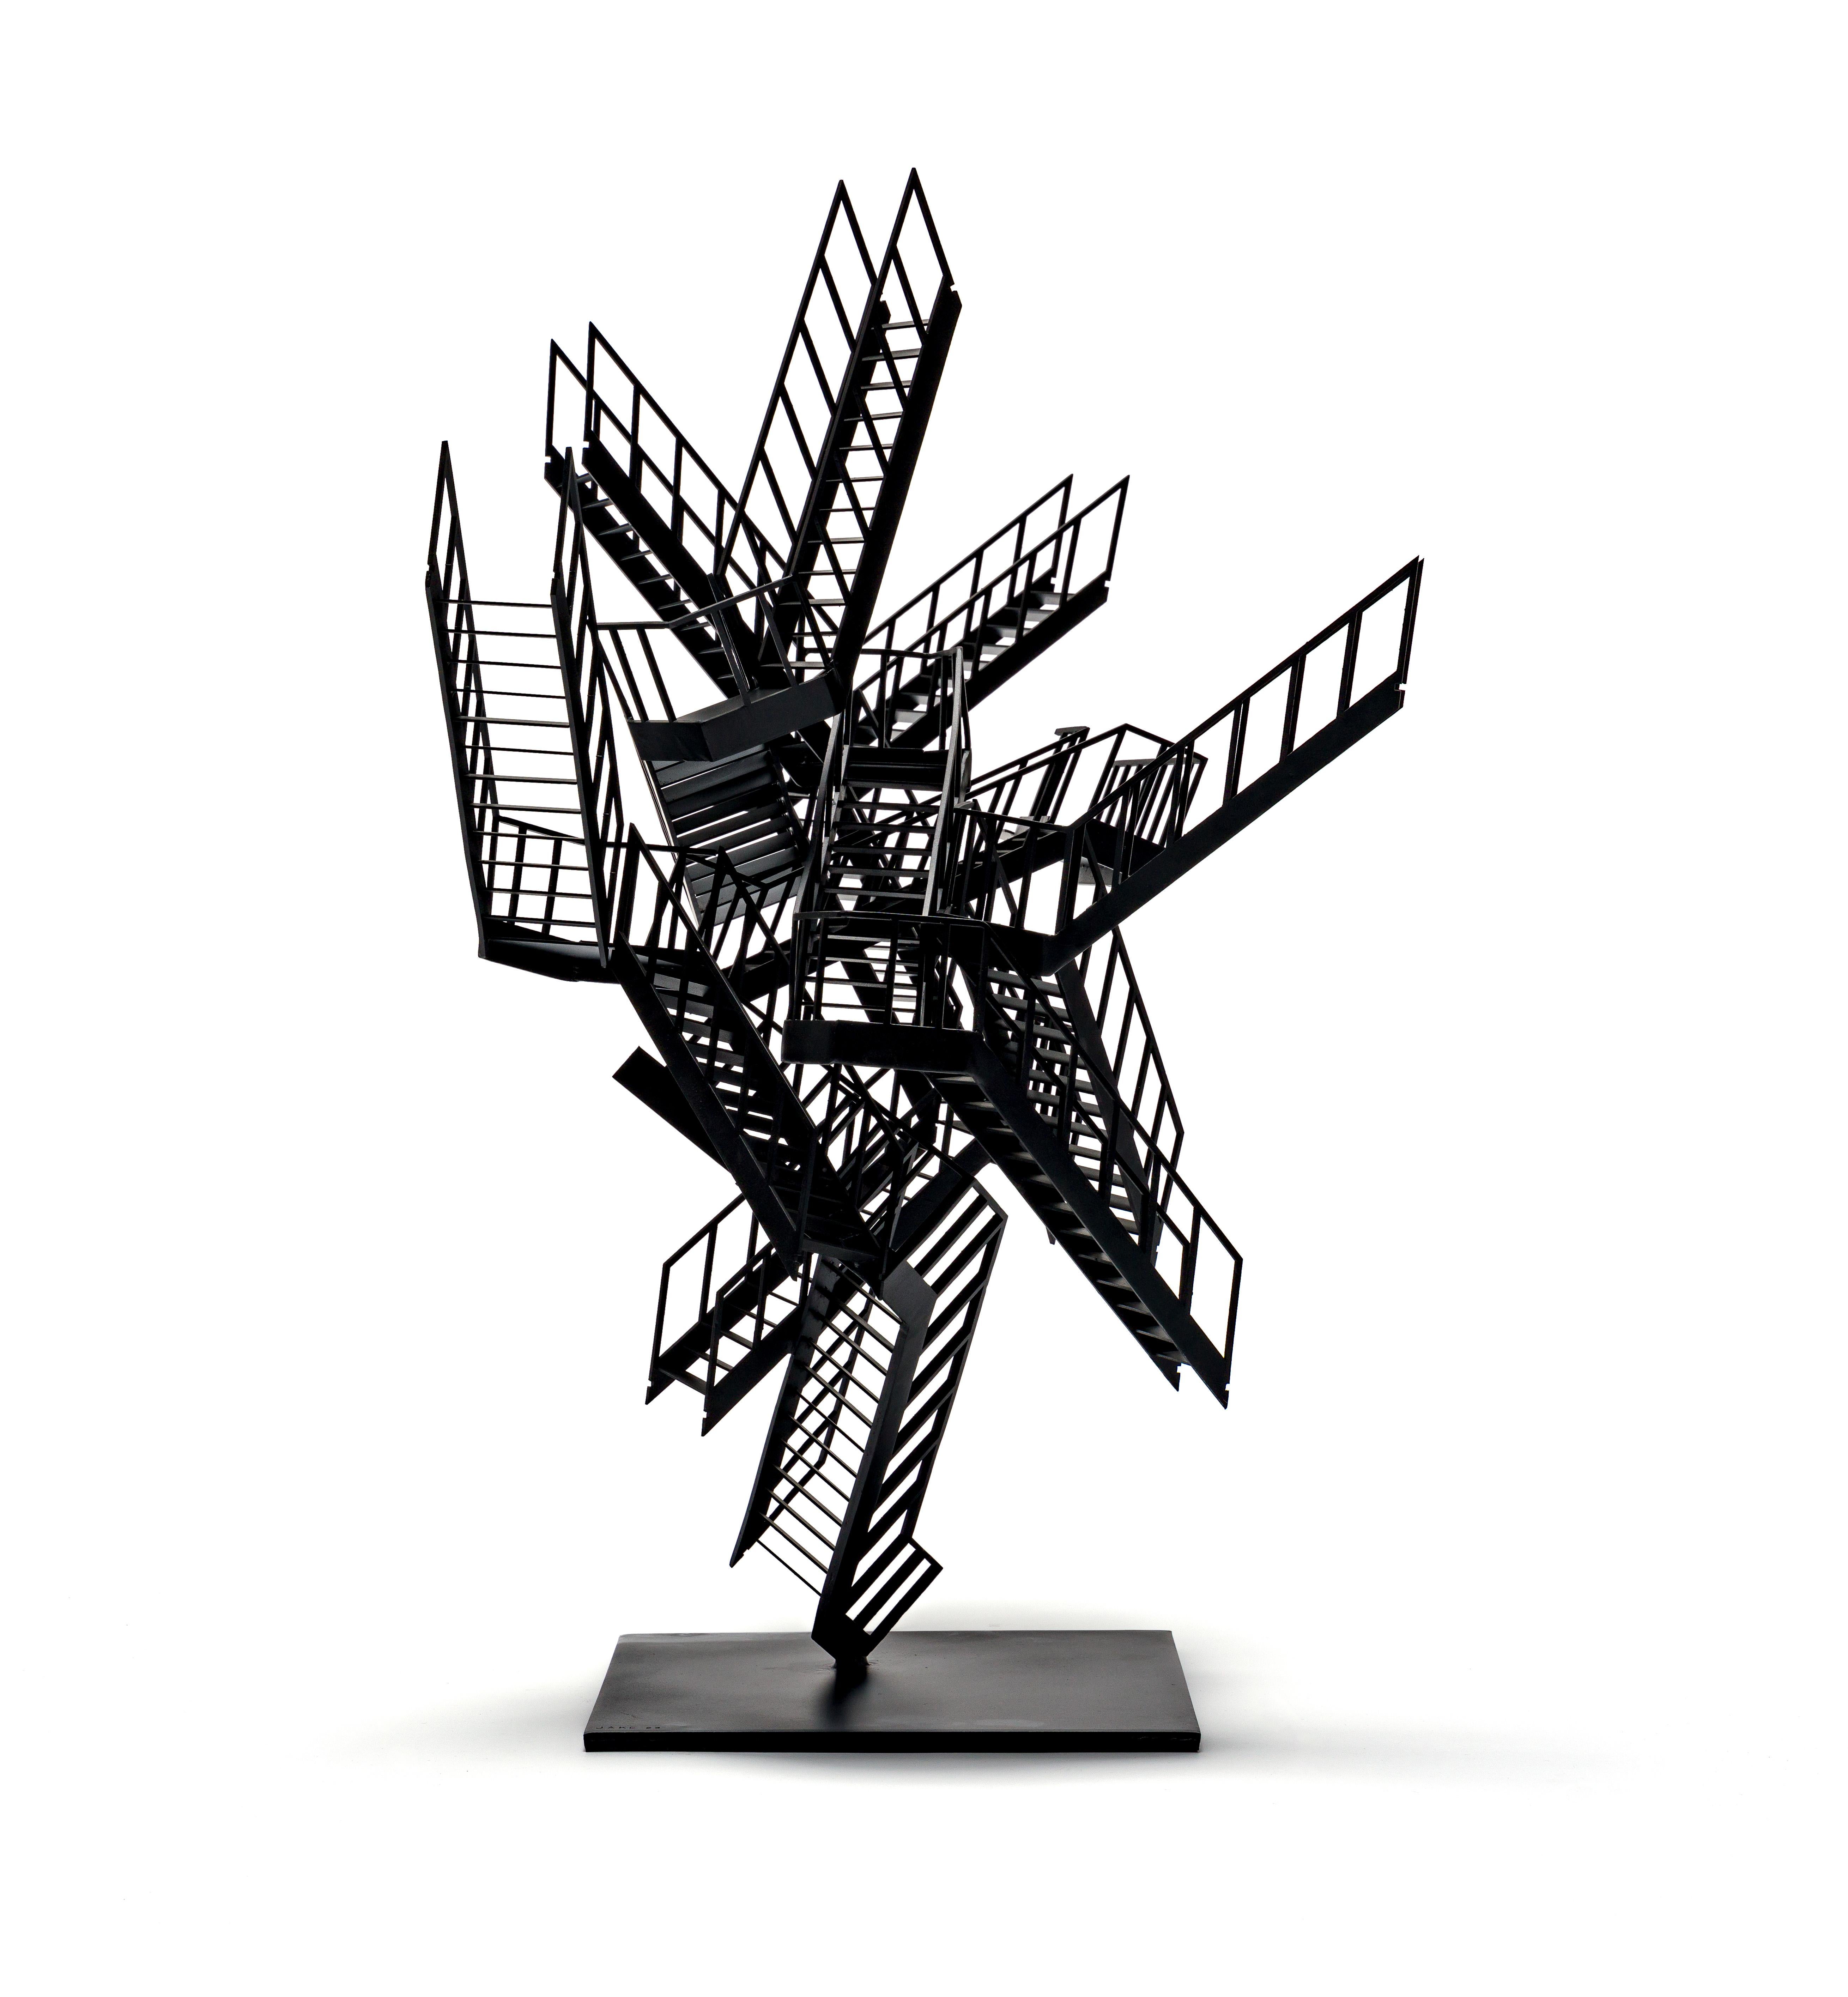 Incident d'escalade, sculpture contemporaine d'un escalier, en noir - Contemporain Sculpture par Jake Michael Singer